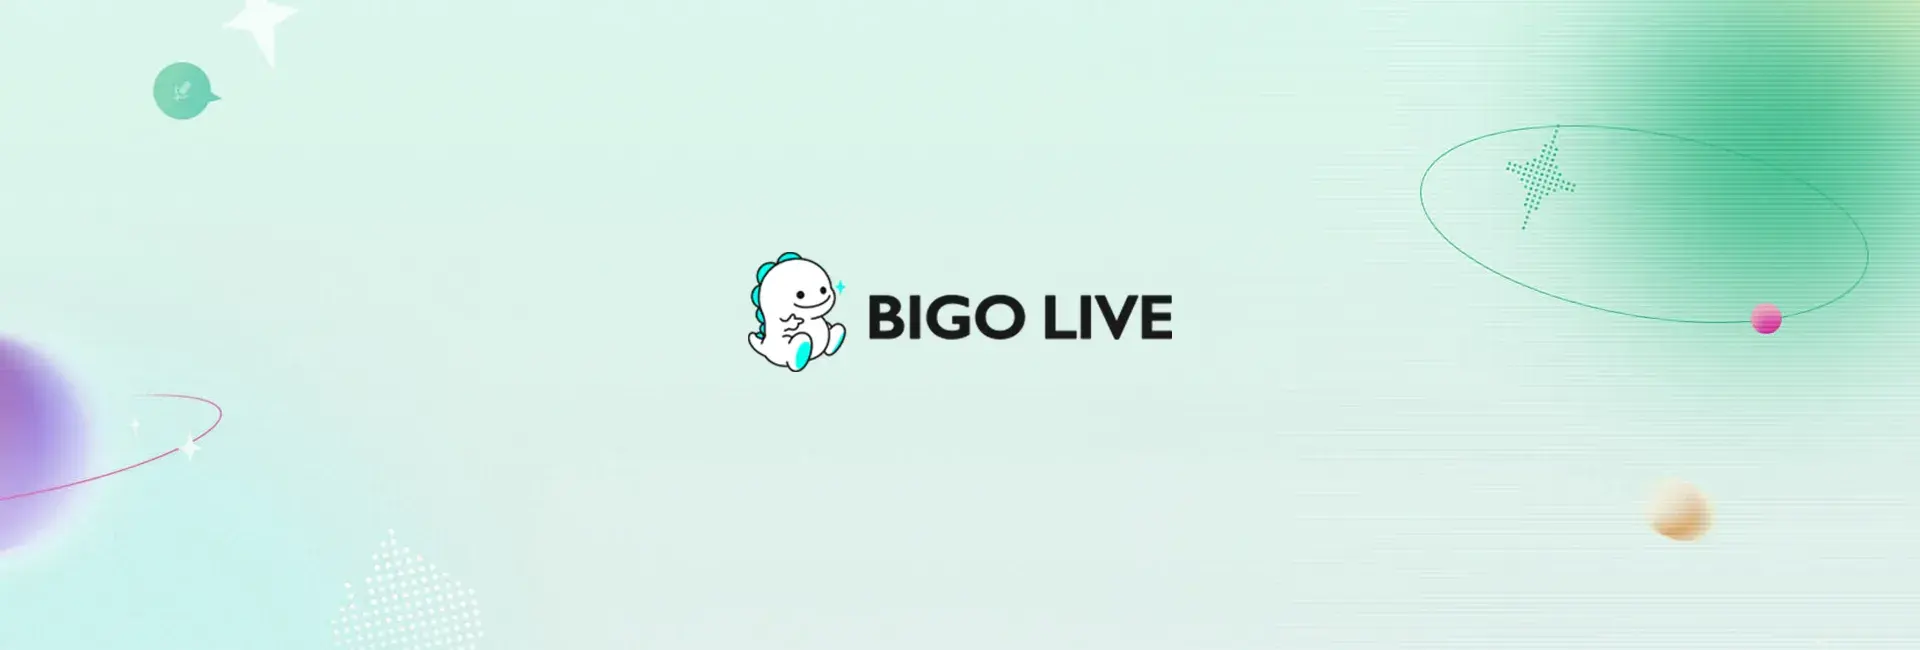 Bigo Live - 800 Diamonds (Global)